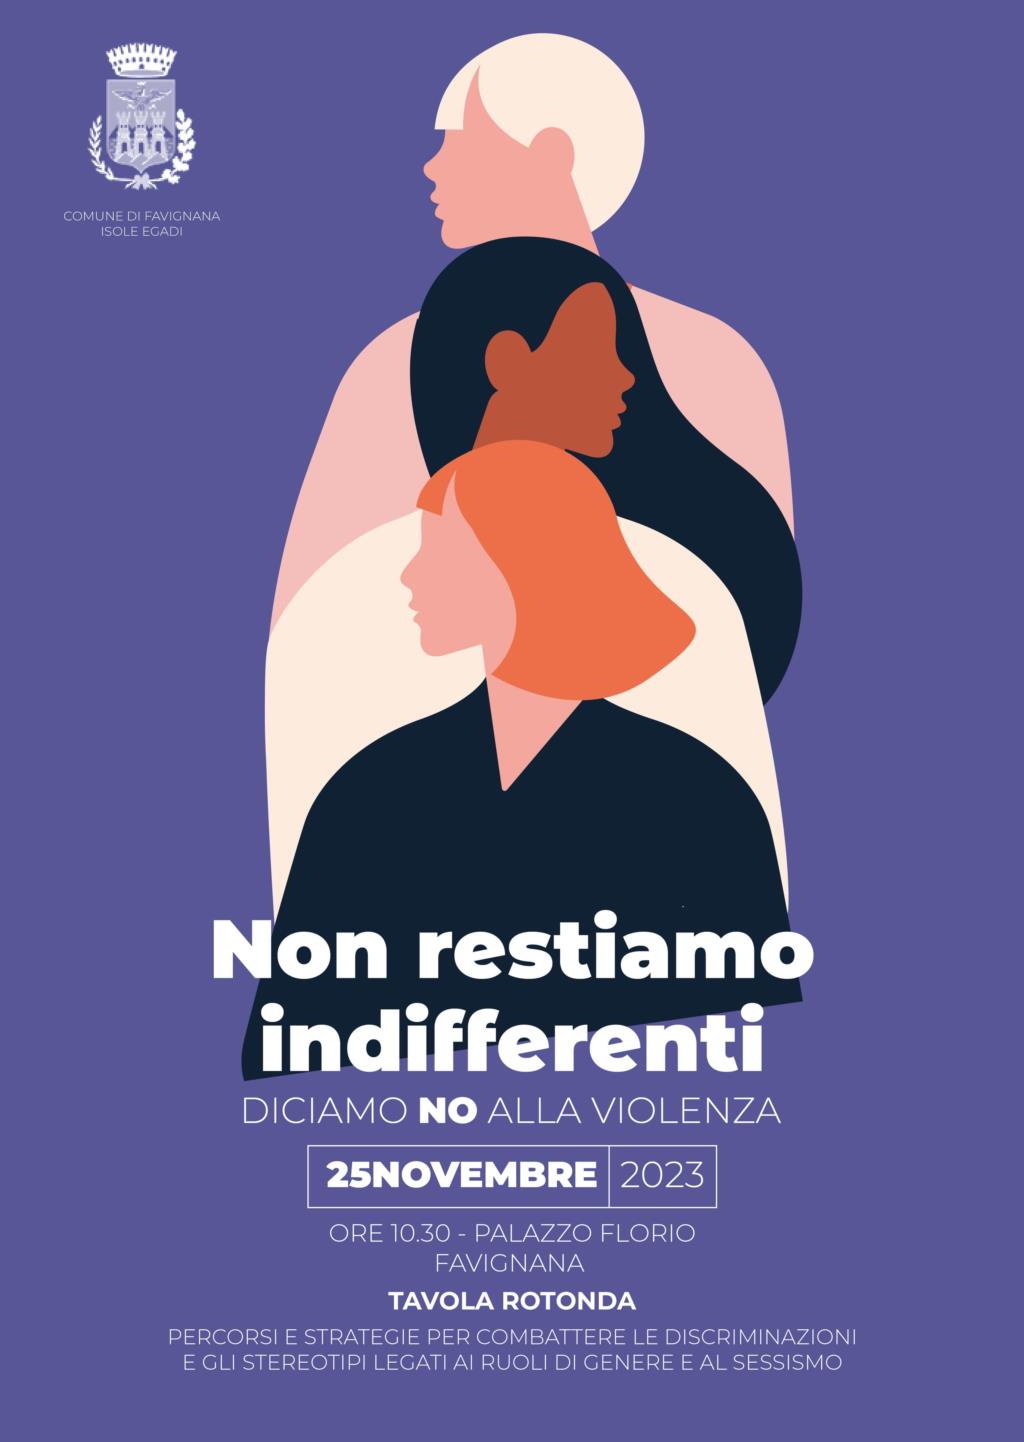 Il Comune di Favignana lancia la campagna 'Non restiamo indifferenti, diciamo no alla violenza'